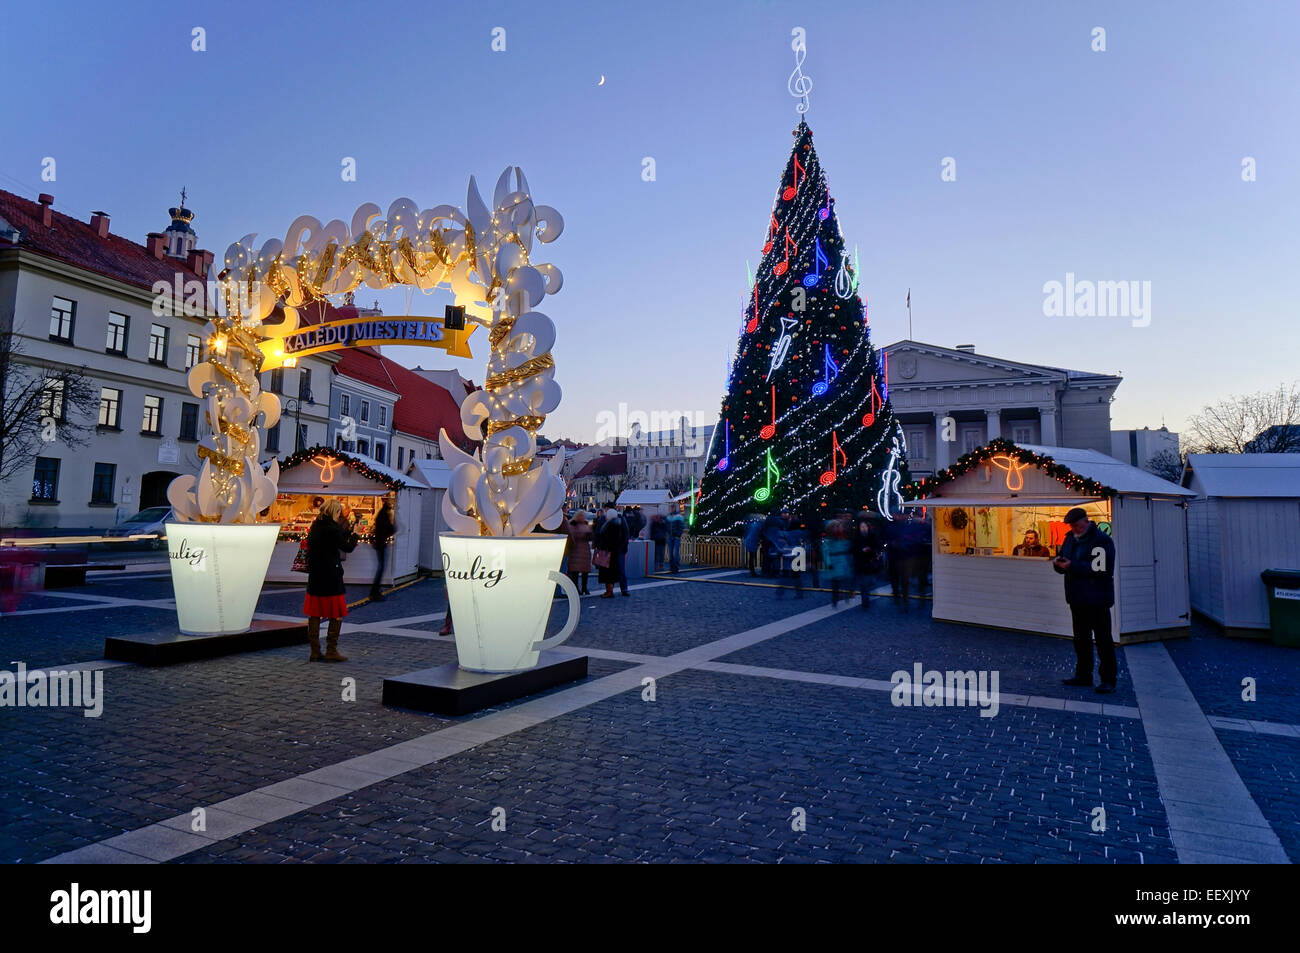 VILNIUS, Litauen - 26. Dezember 2014: Paulig Kaffee - Sponsor der Weihnachtsferien in den baltischen Staaten. Die Marke wurde gegründet Stockfoto